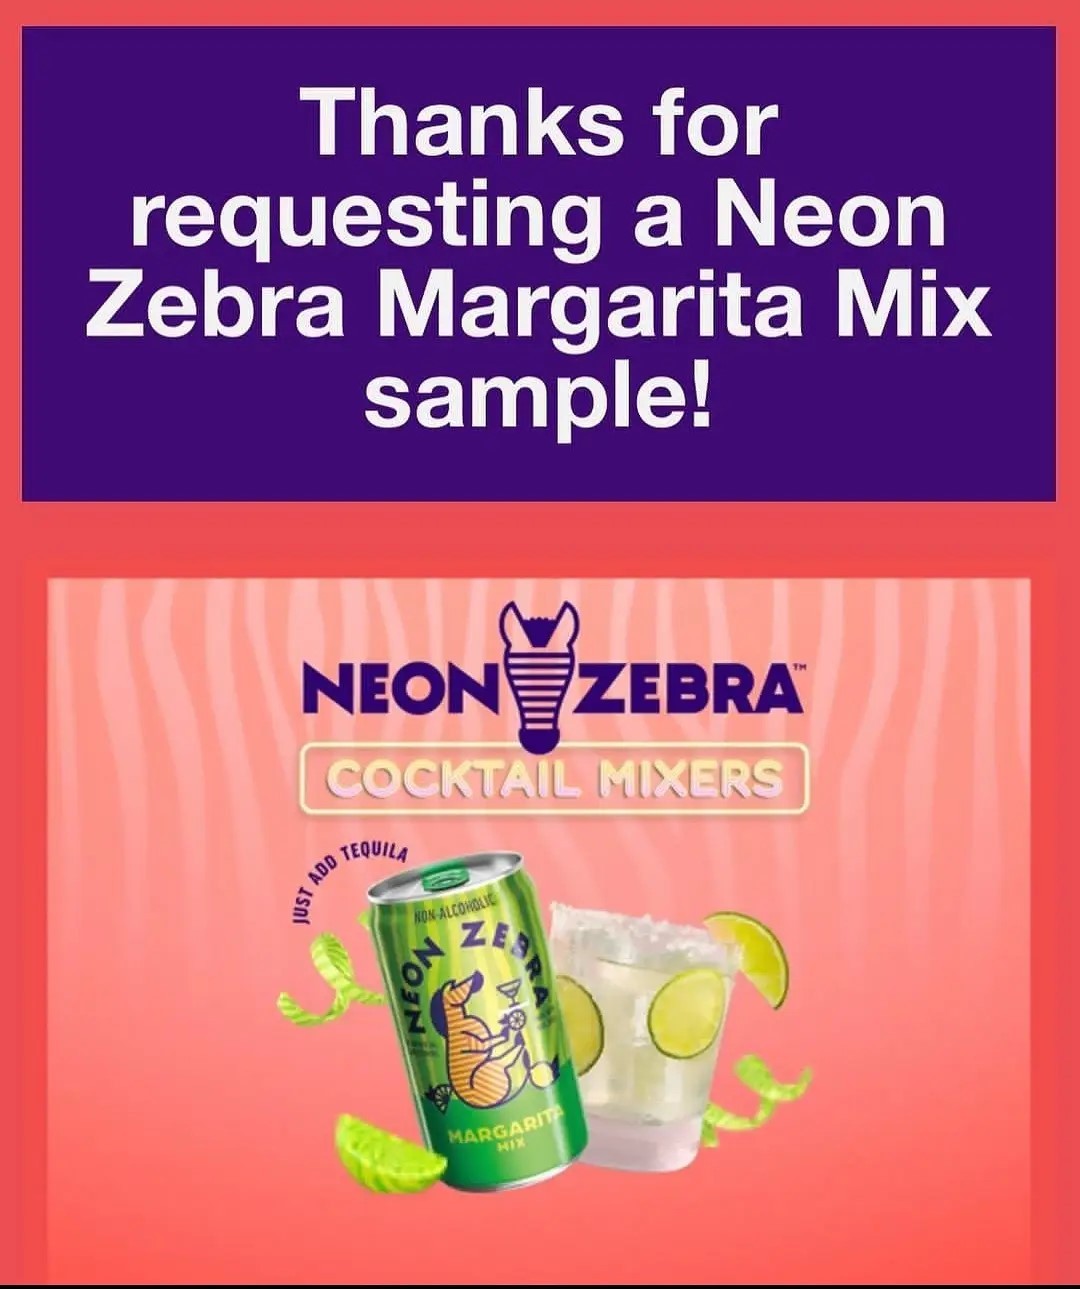 neon zebra mixer send me a sample